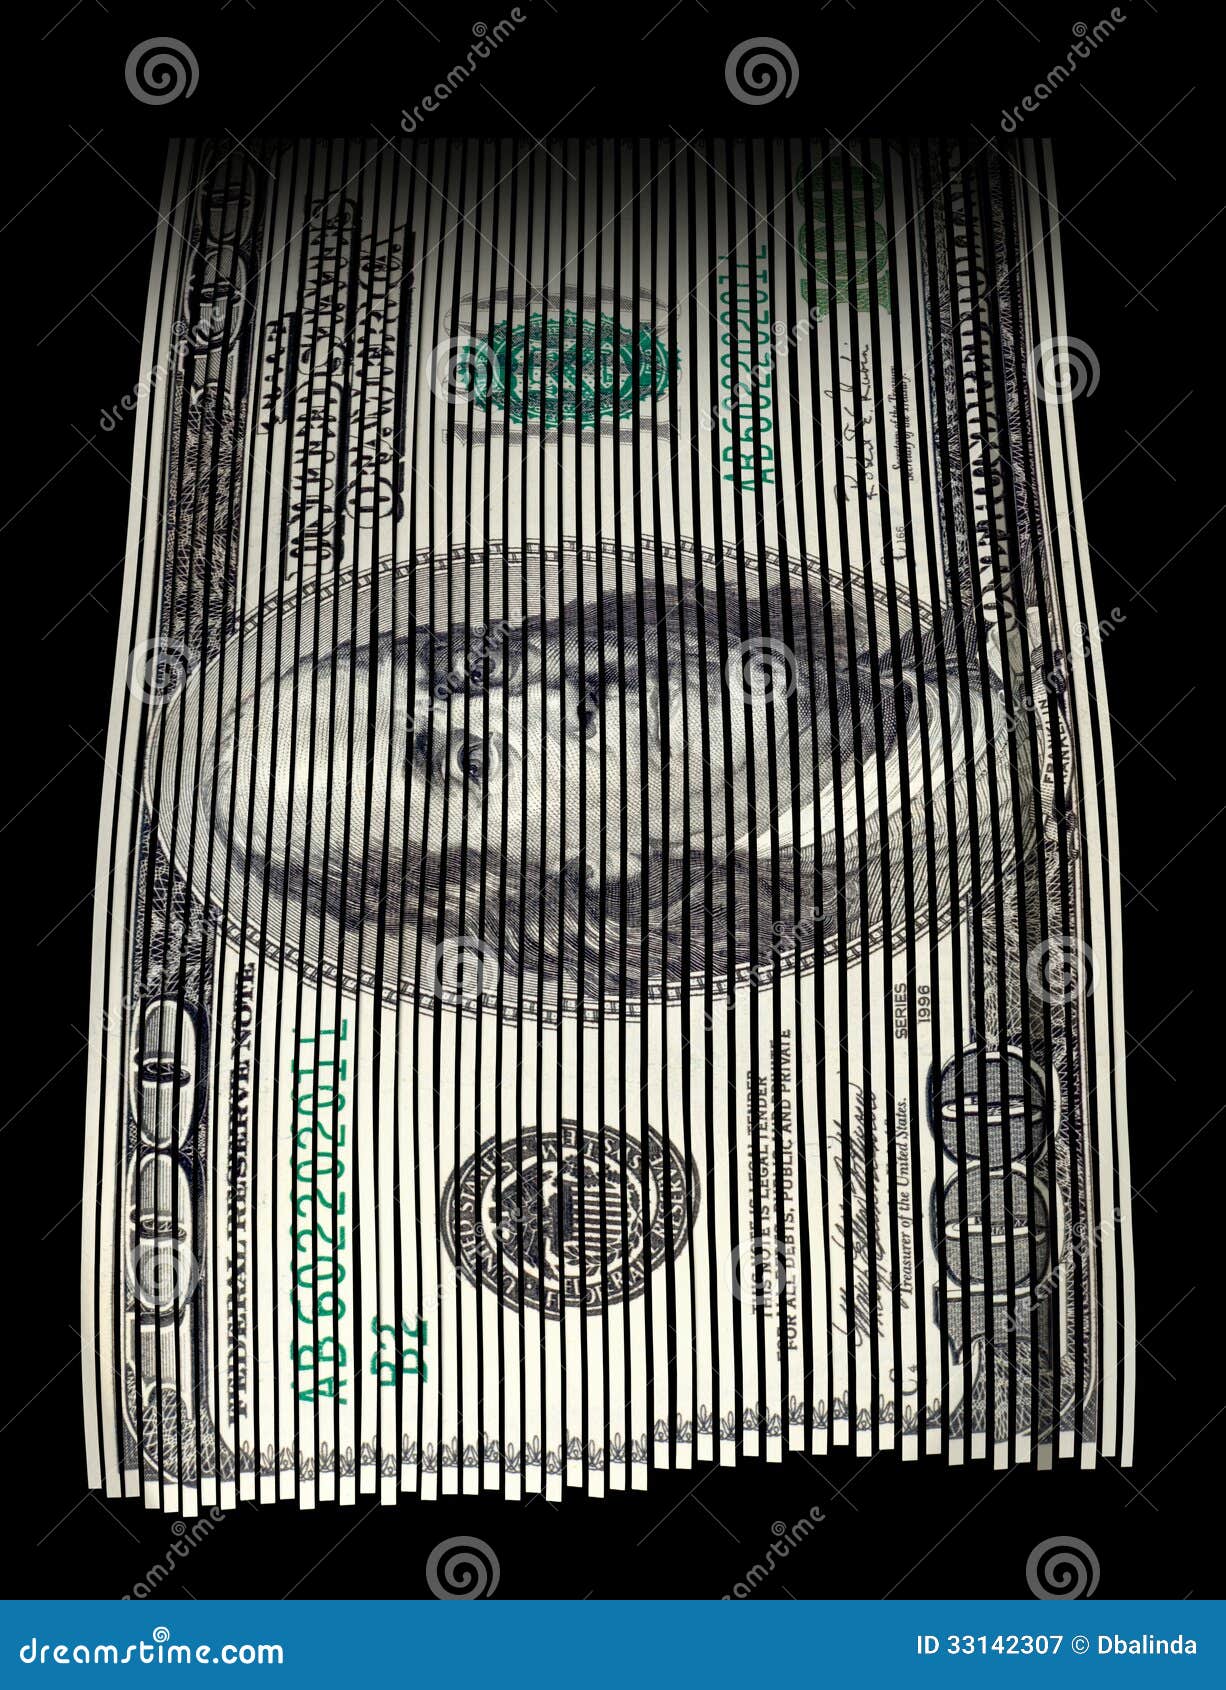 Strzępienie pieniądze. Tarty USA sto dolarowy rachunek na czarnym tle. Pojęcie dla pieniądze marnowania, pieniądze wartości i savings.